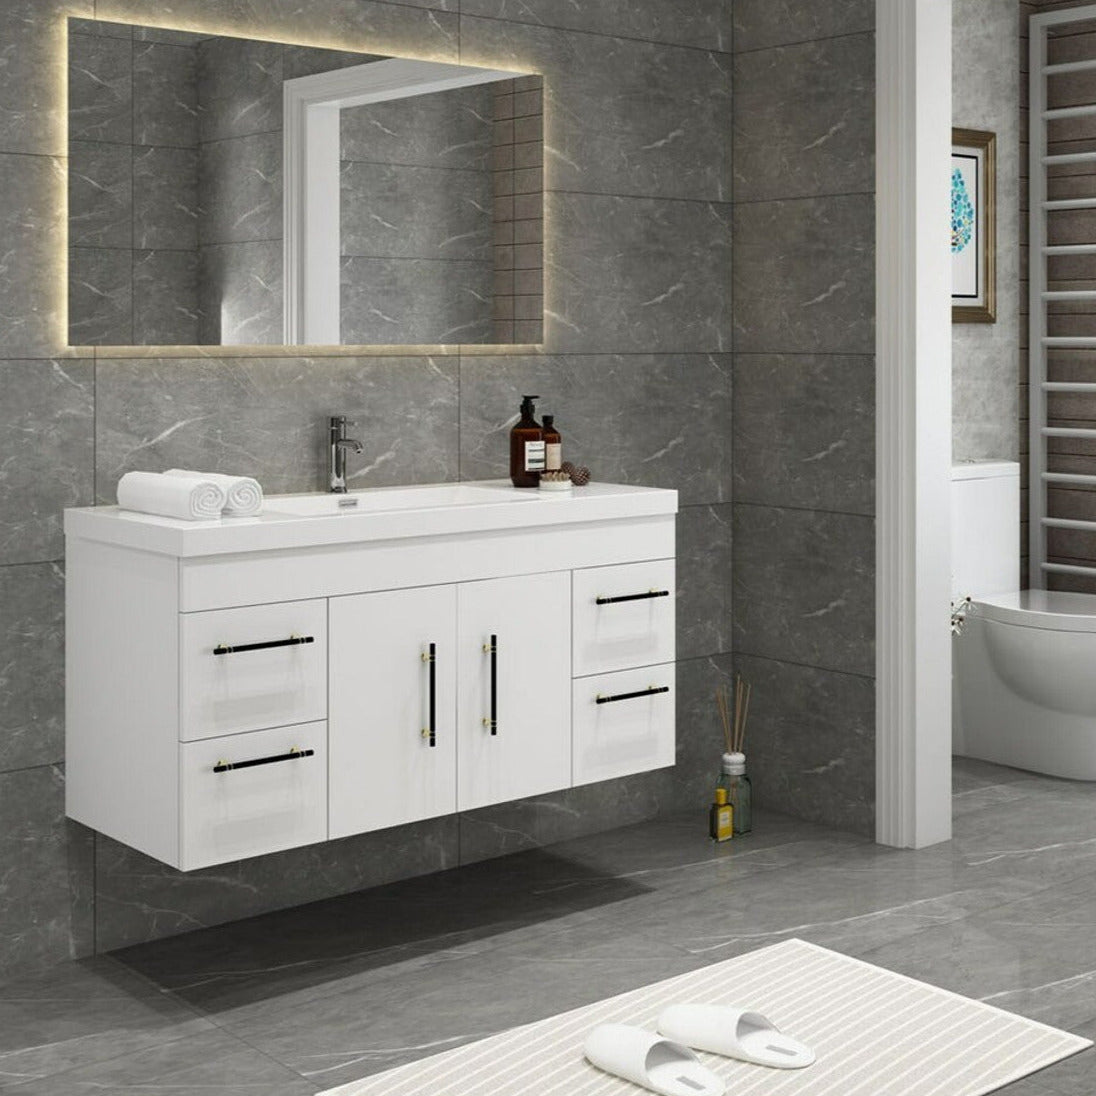 Elsa 48" Wall Mounted Bathroom Vanity with Reinforced Acrylic Sink